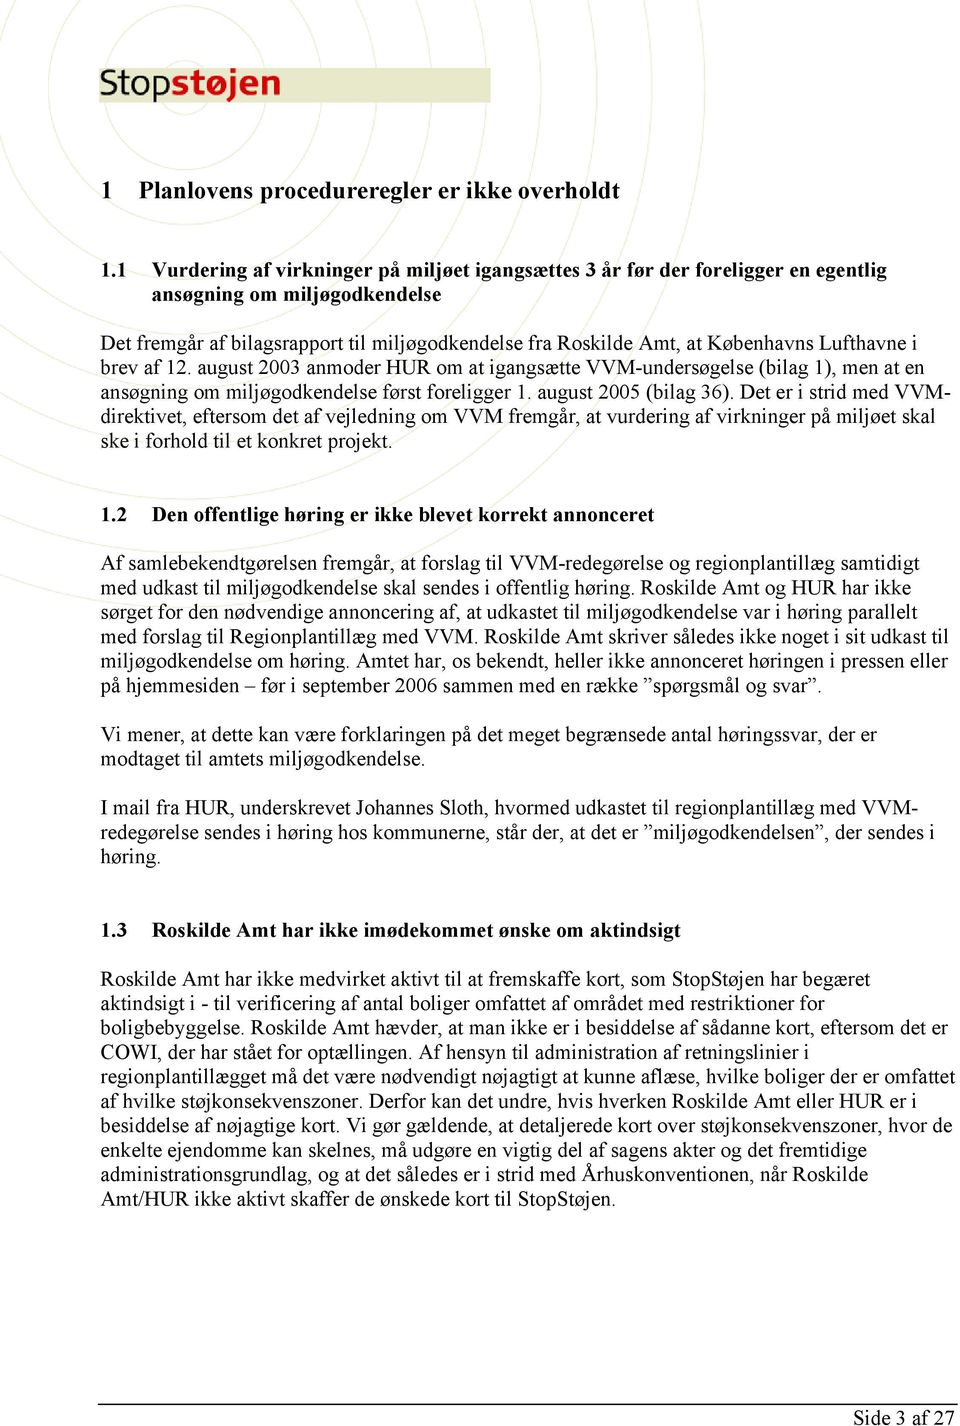 Lufthavne i brev af 12. august 2003 anmoder HUR om at igangsætte VVM-undersøgelse (bilag 1), men at en ansøgning om miljøgodkendelse først foreligger 1. august 2005 (bilag 36).